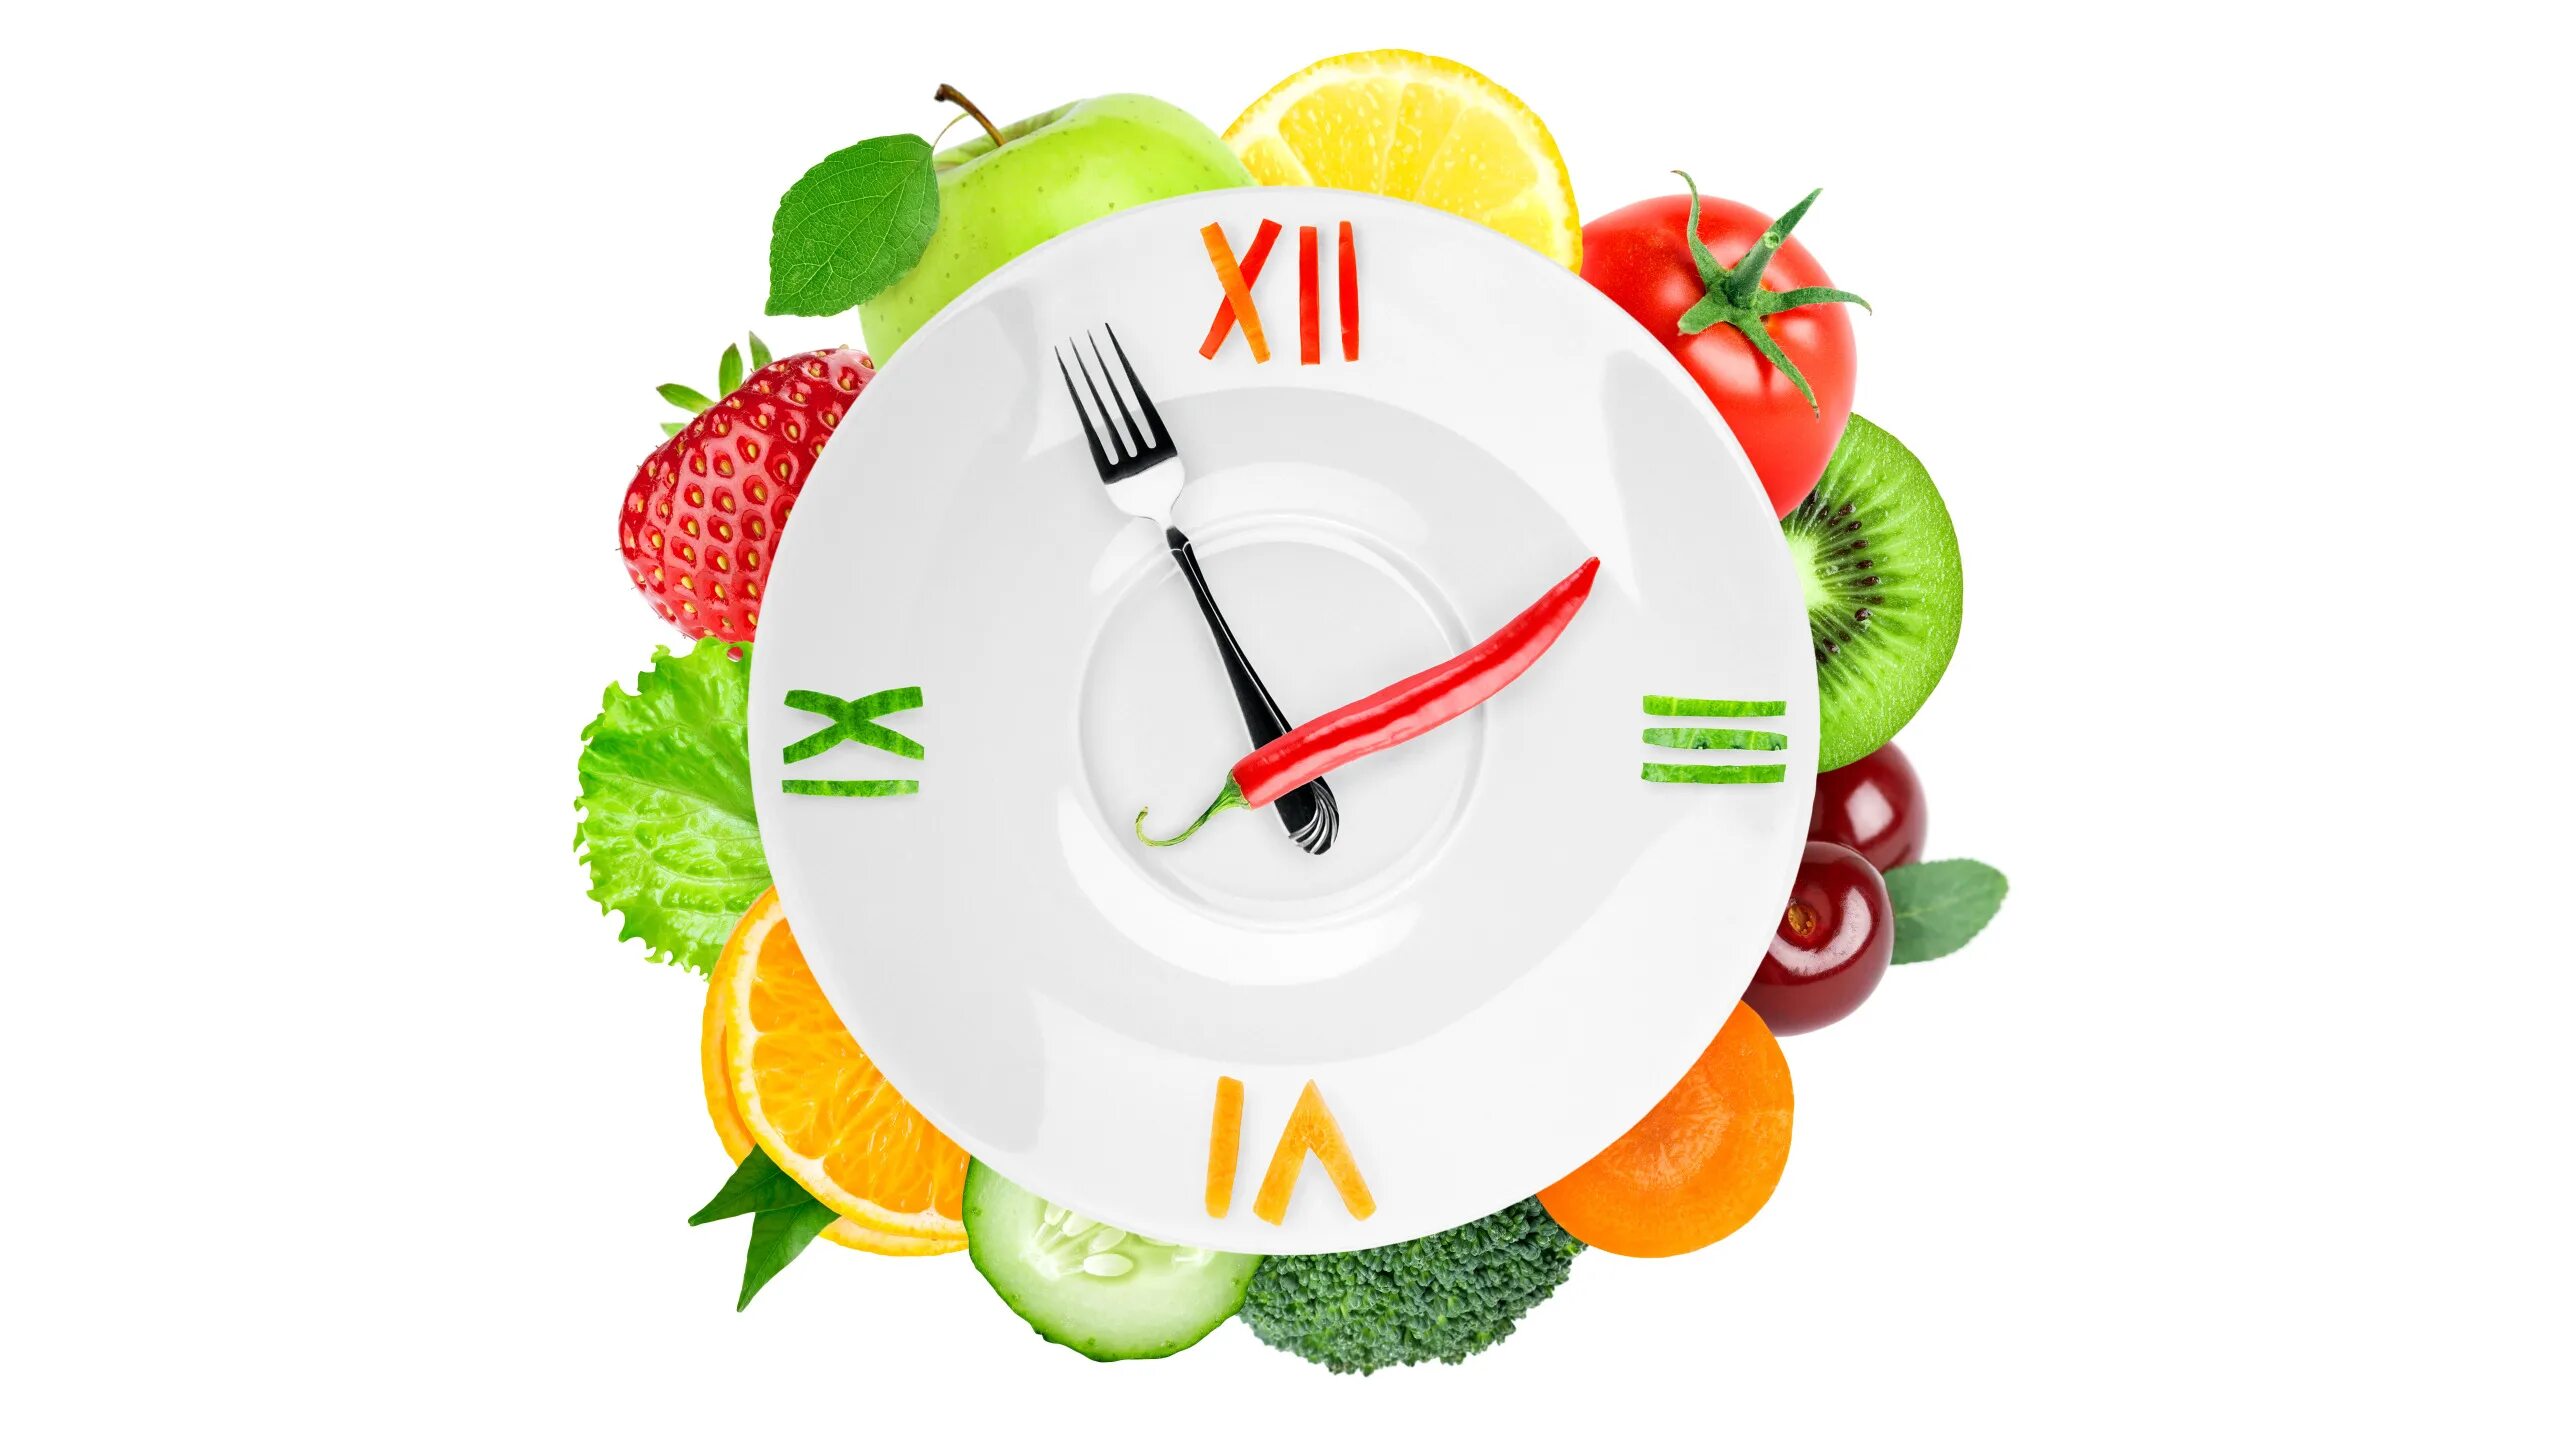 Здоровый образ жизни по часам. Тарелка правильного питания. Здоровое питание на прозрачном фоне. Здоровое питание иллюстрация. Часы из овощей и фруктов.